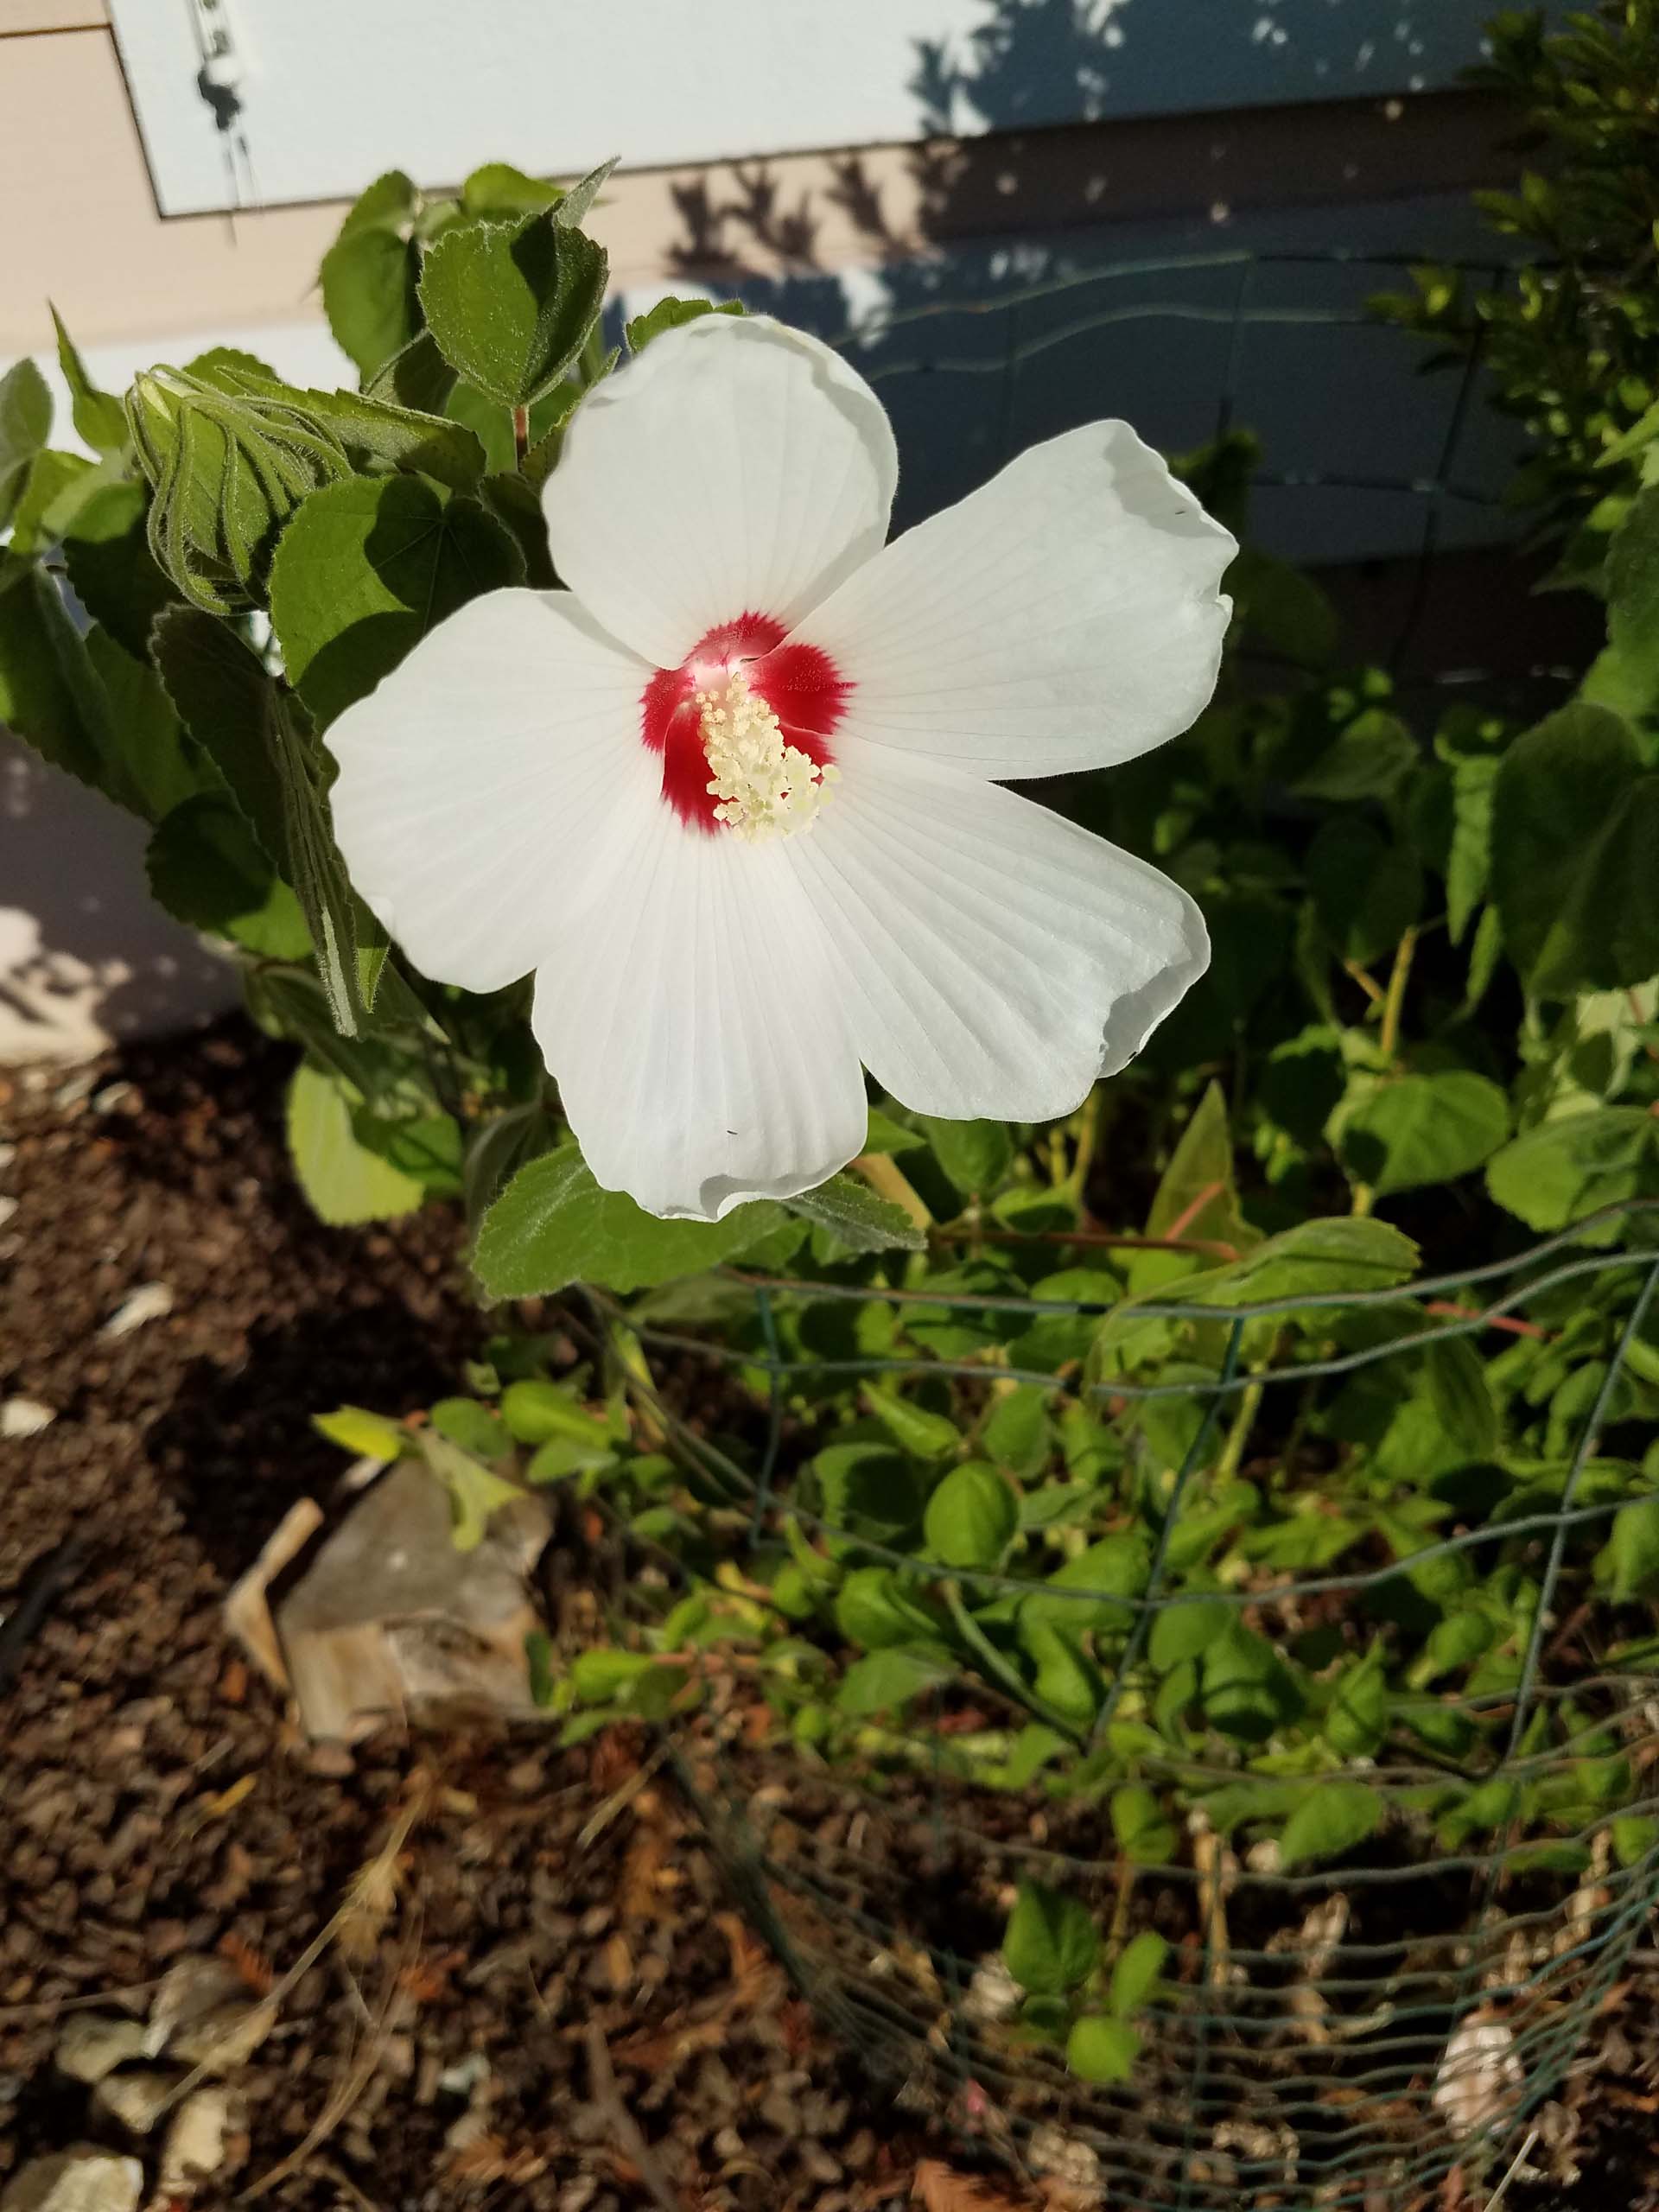 Rose mallow or California hibiscus. D. Mandel.